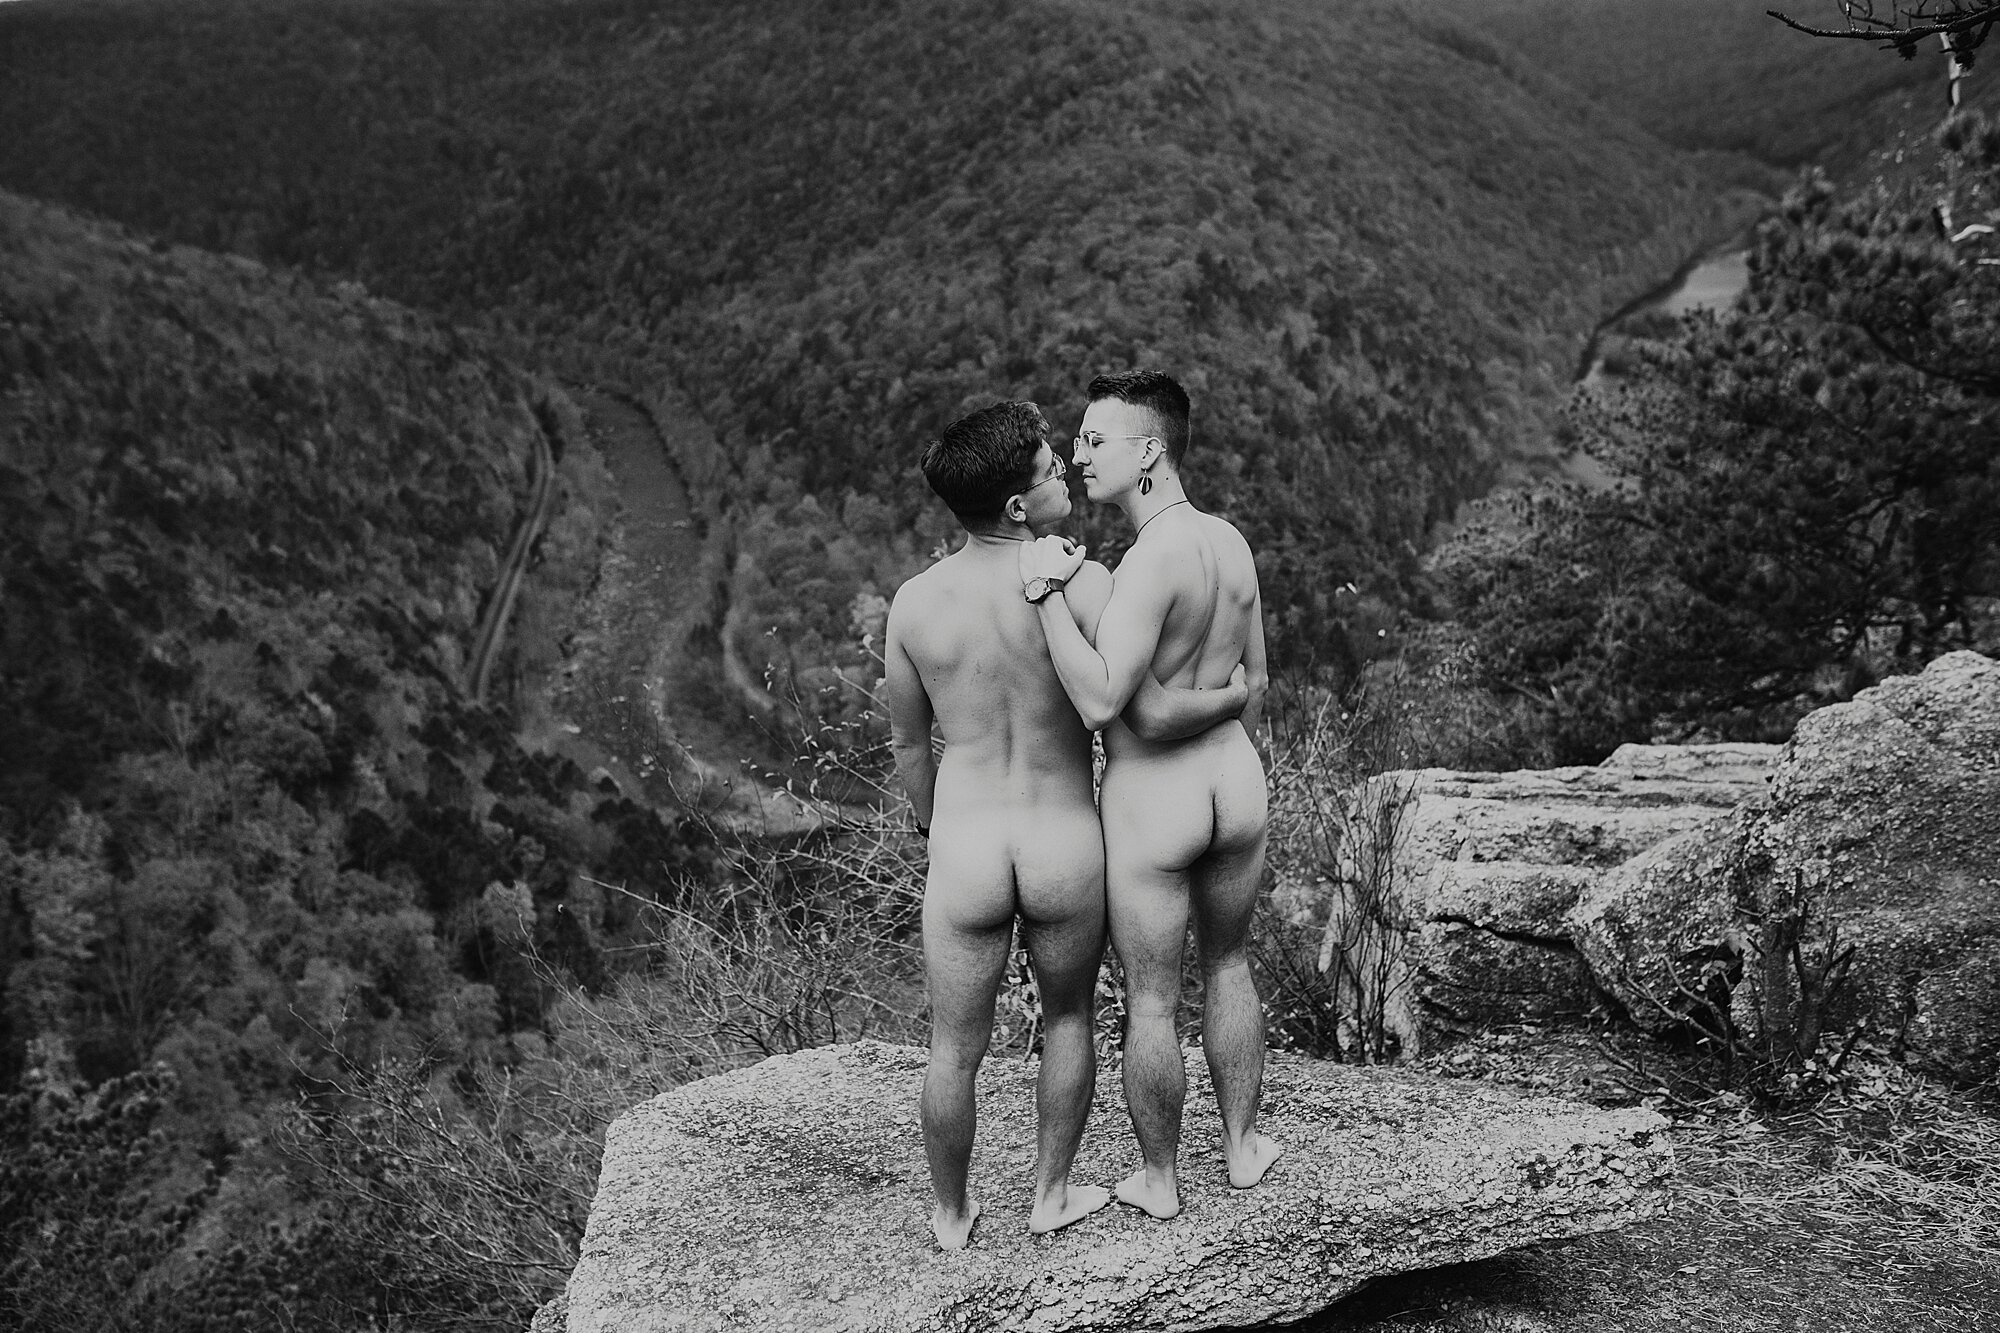 01_AAron_Nathan_Love_by_Joe_mac_best_Philadelphia_Wedding_Photography_Nude_Engagement_Gay_Queer_LGBT_nudist_042.JPG